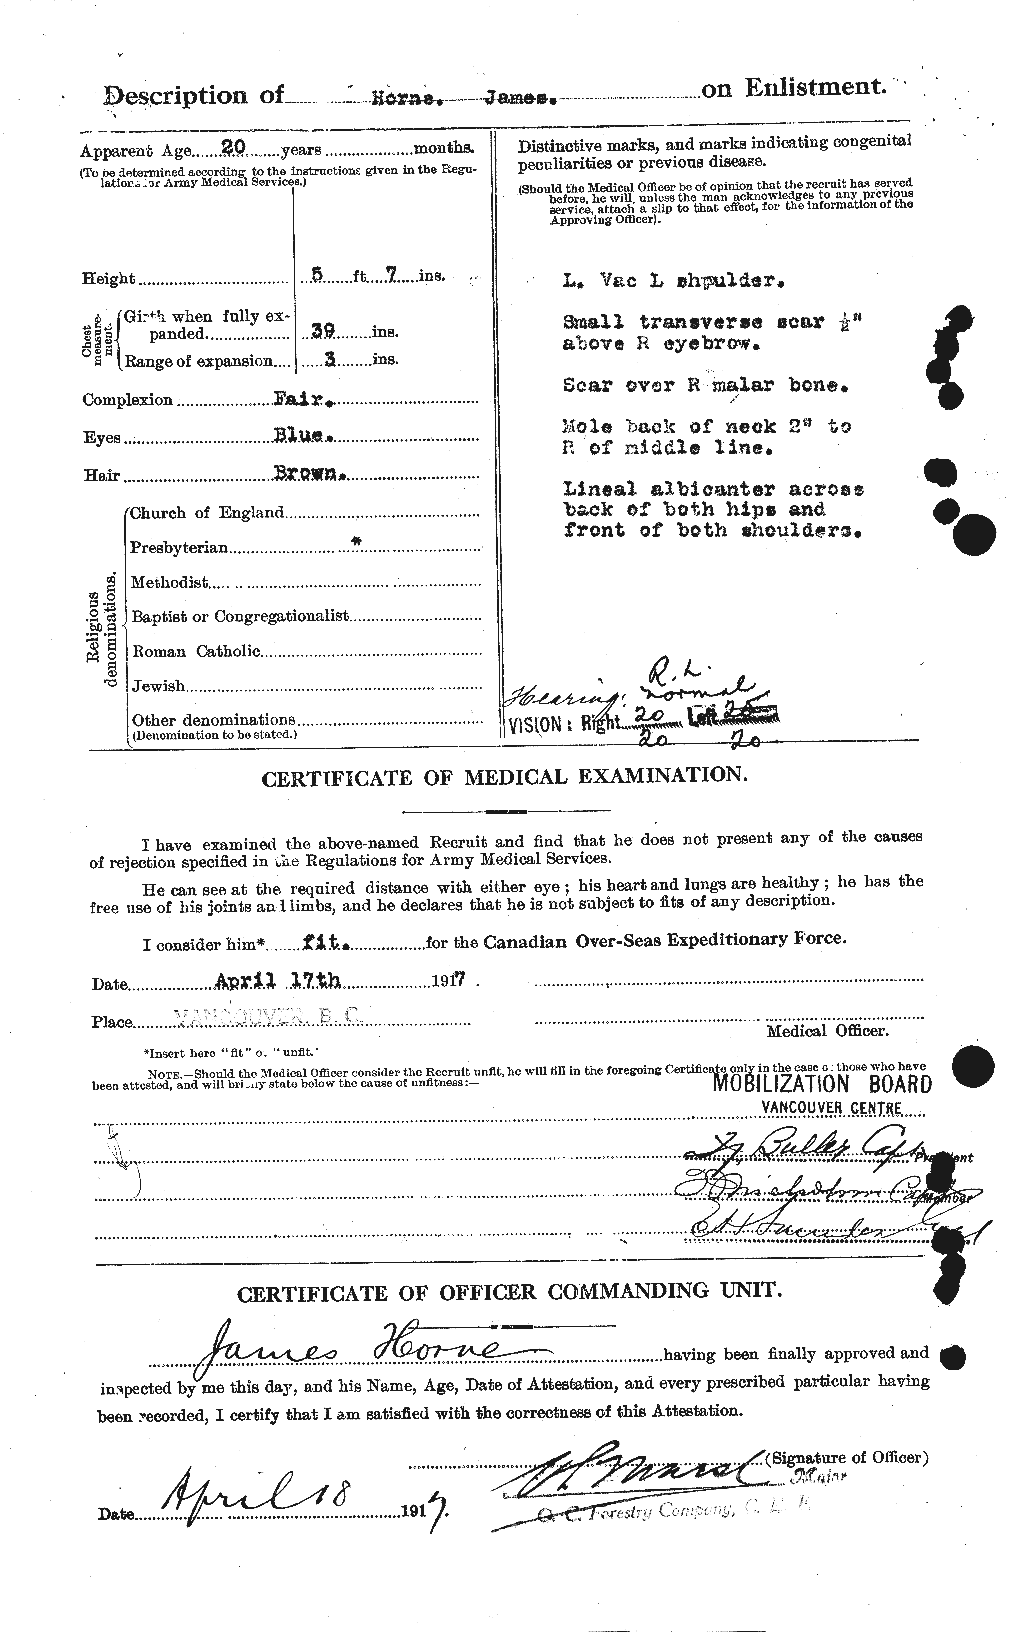 Dossiers du Personnel de la Première Guerre mondiale - CEC 399639b